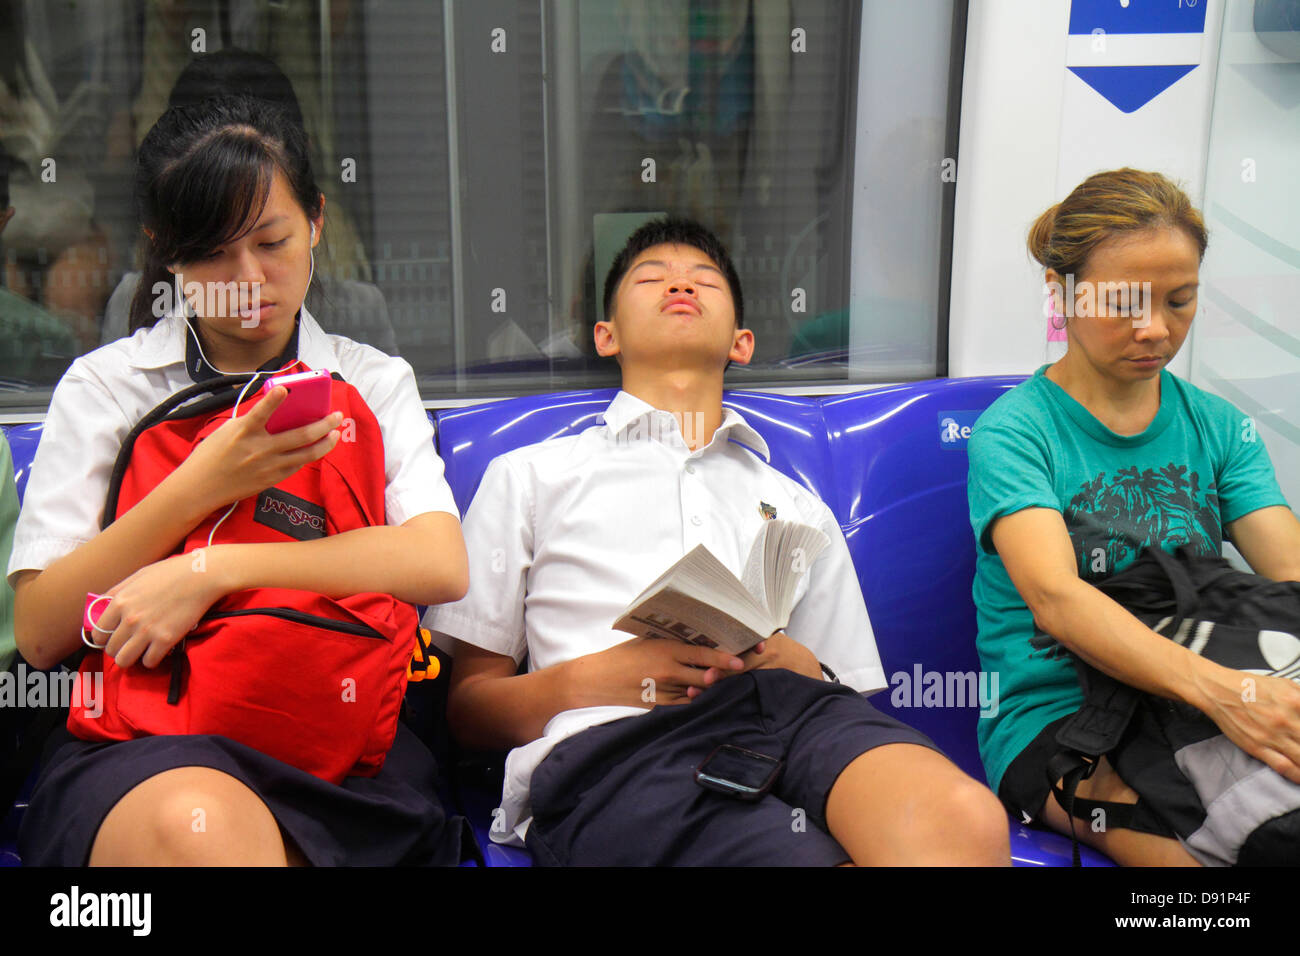 Singapour,Bishan MRT Station,Circle Line,métro train,riders,navetteurs,étudiants asiatiques,adolescents adolescents adolescents adolescents garçons garçons garçons enfants enfants childre Banque D'Images